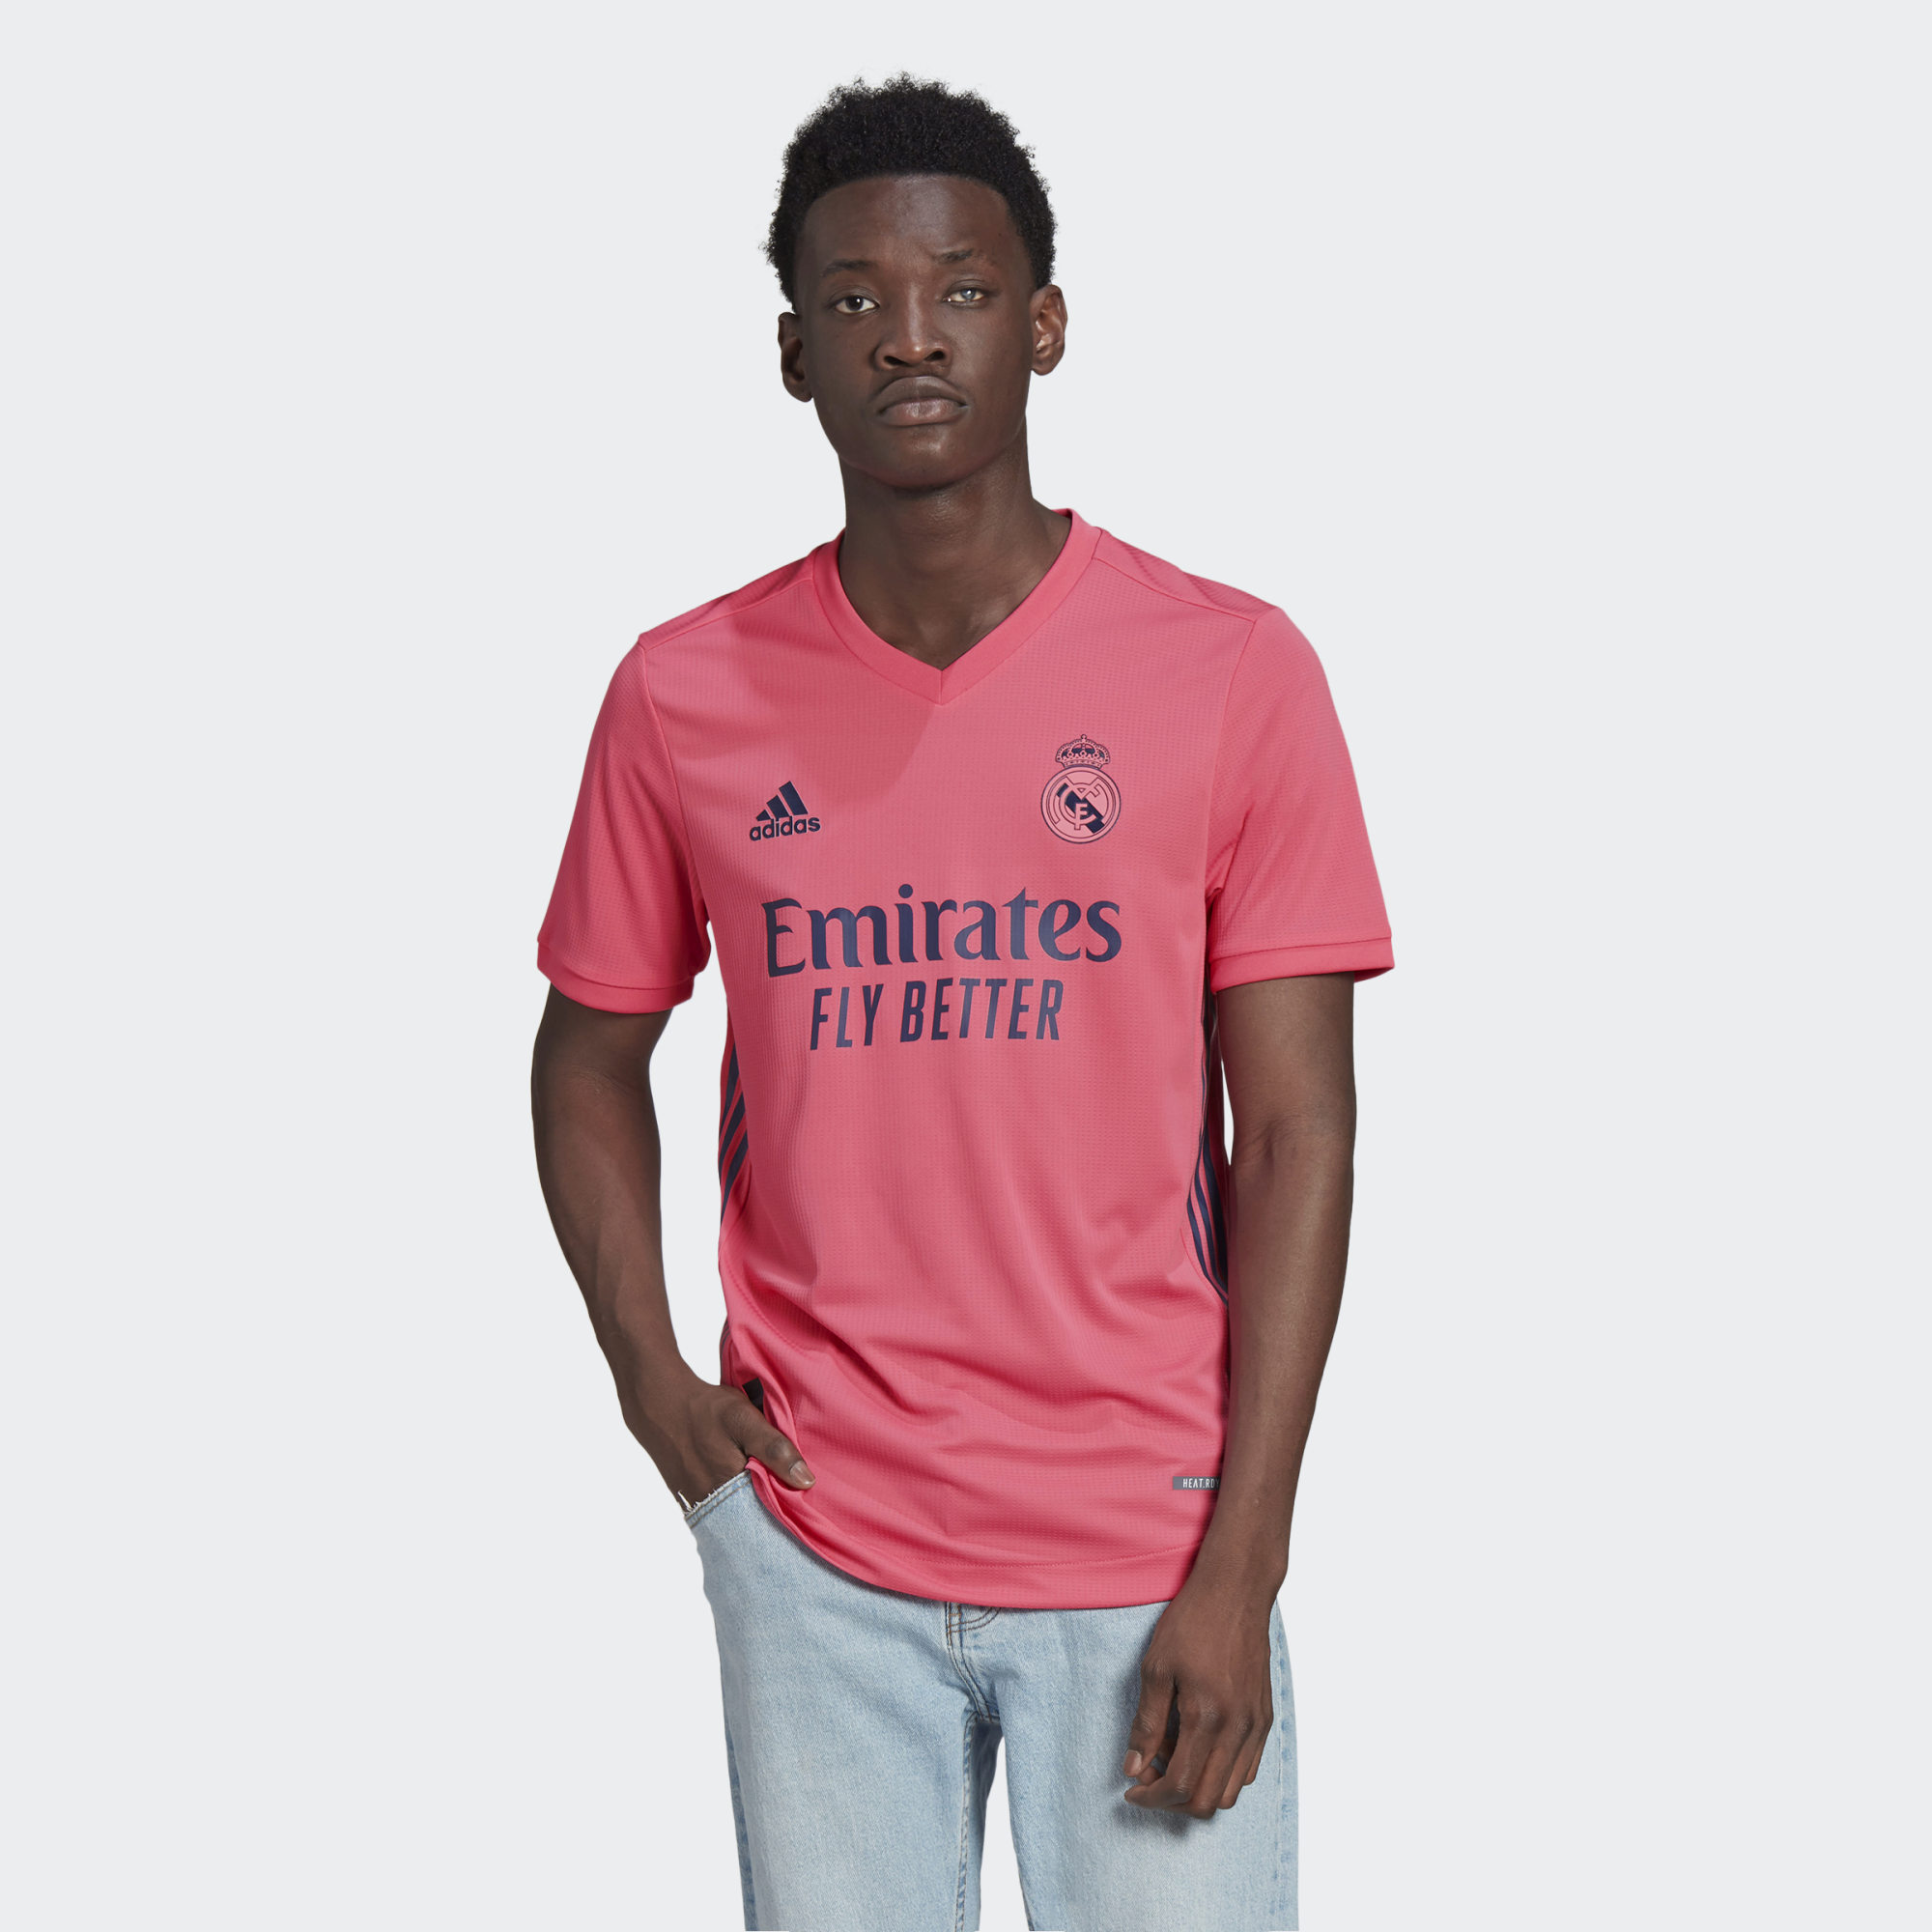 Real Madrid 2020-21 Adidas Away Kit | 20/21 Kits | Football shirt blog